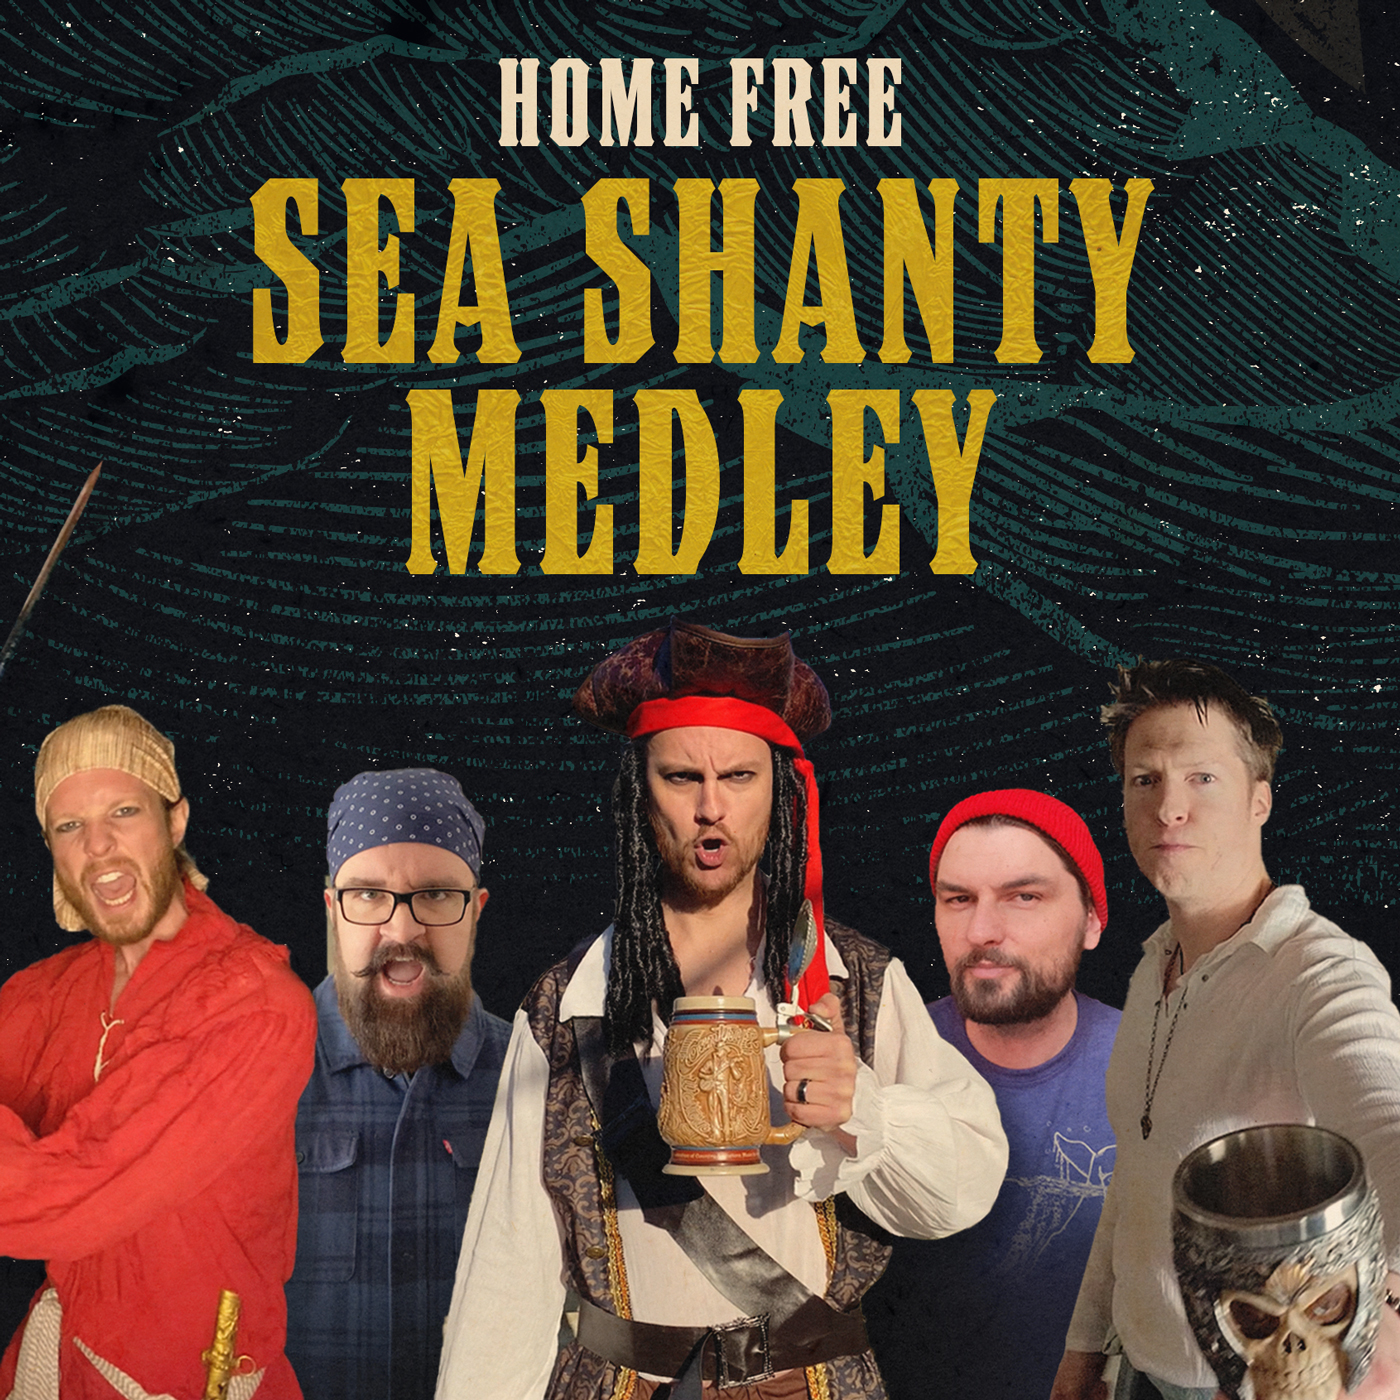 Sea shanty medley